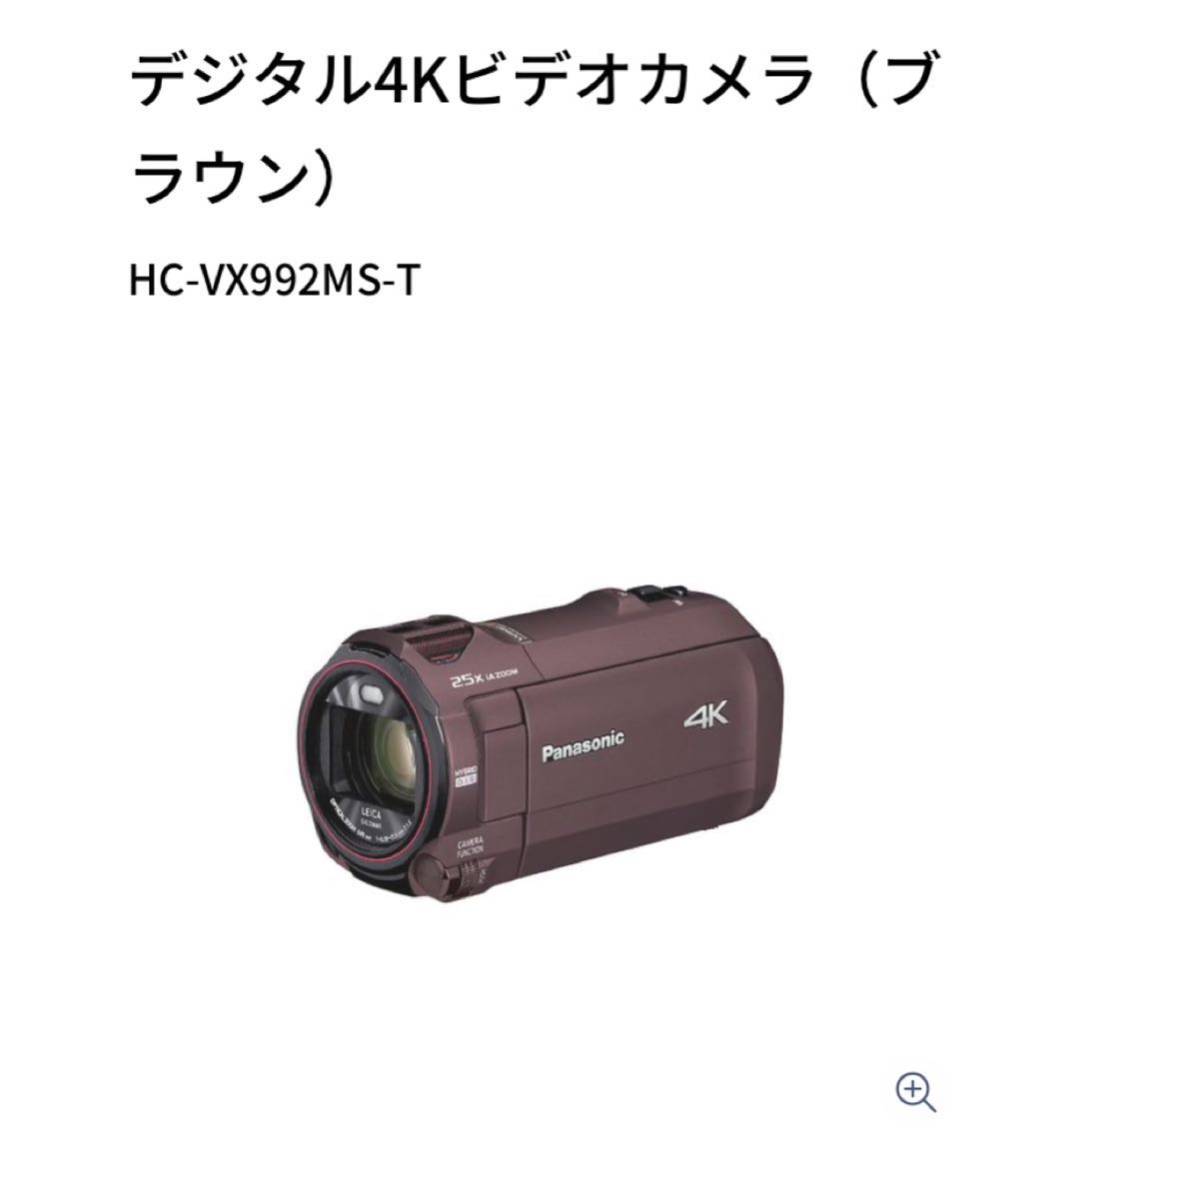 パナソニック デジタル4Kビデオカメラ HC-VX992MS カカオブラウン